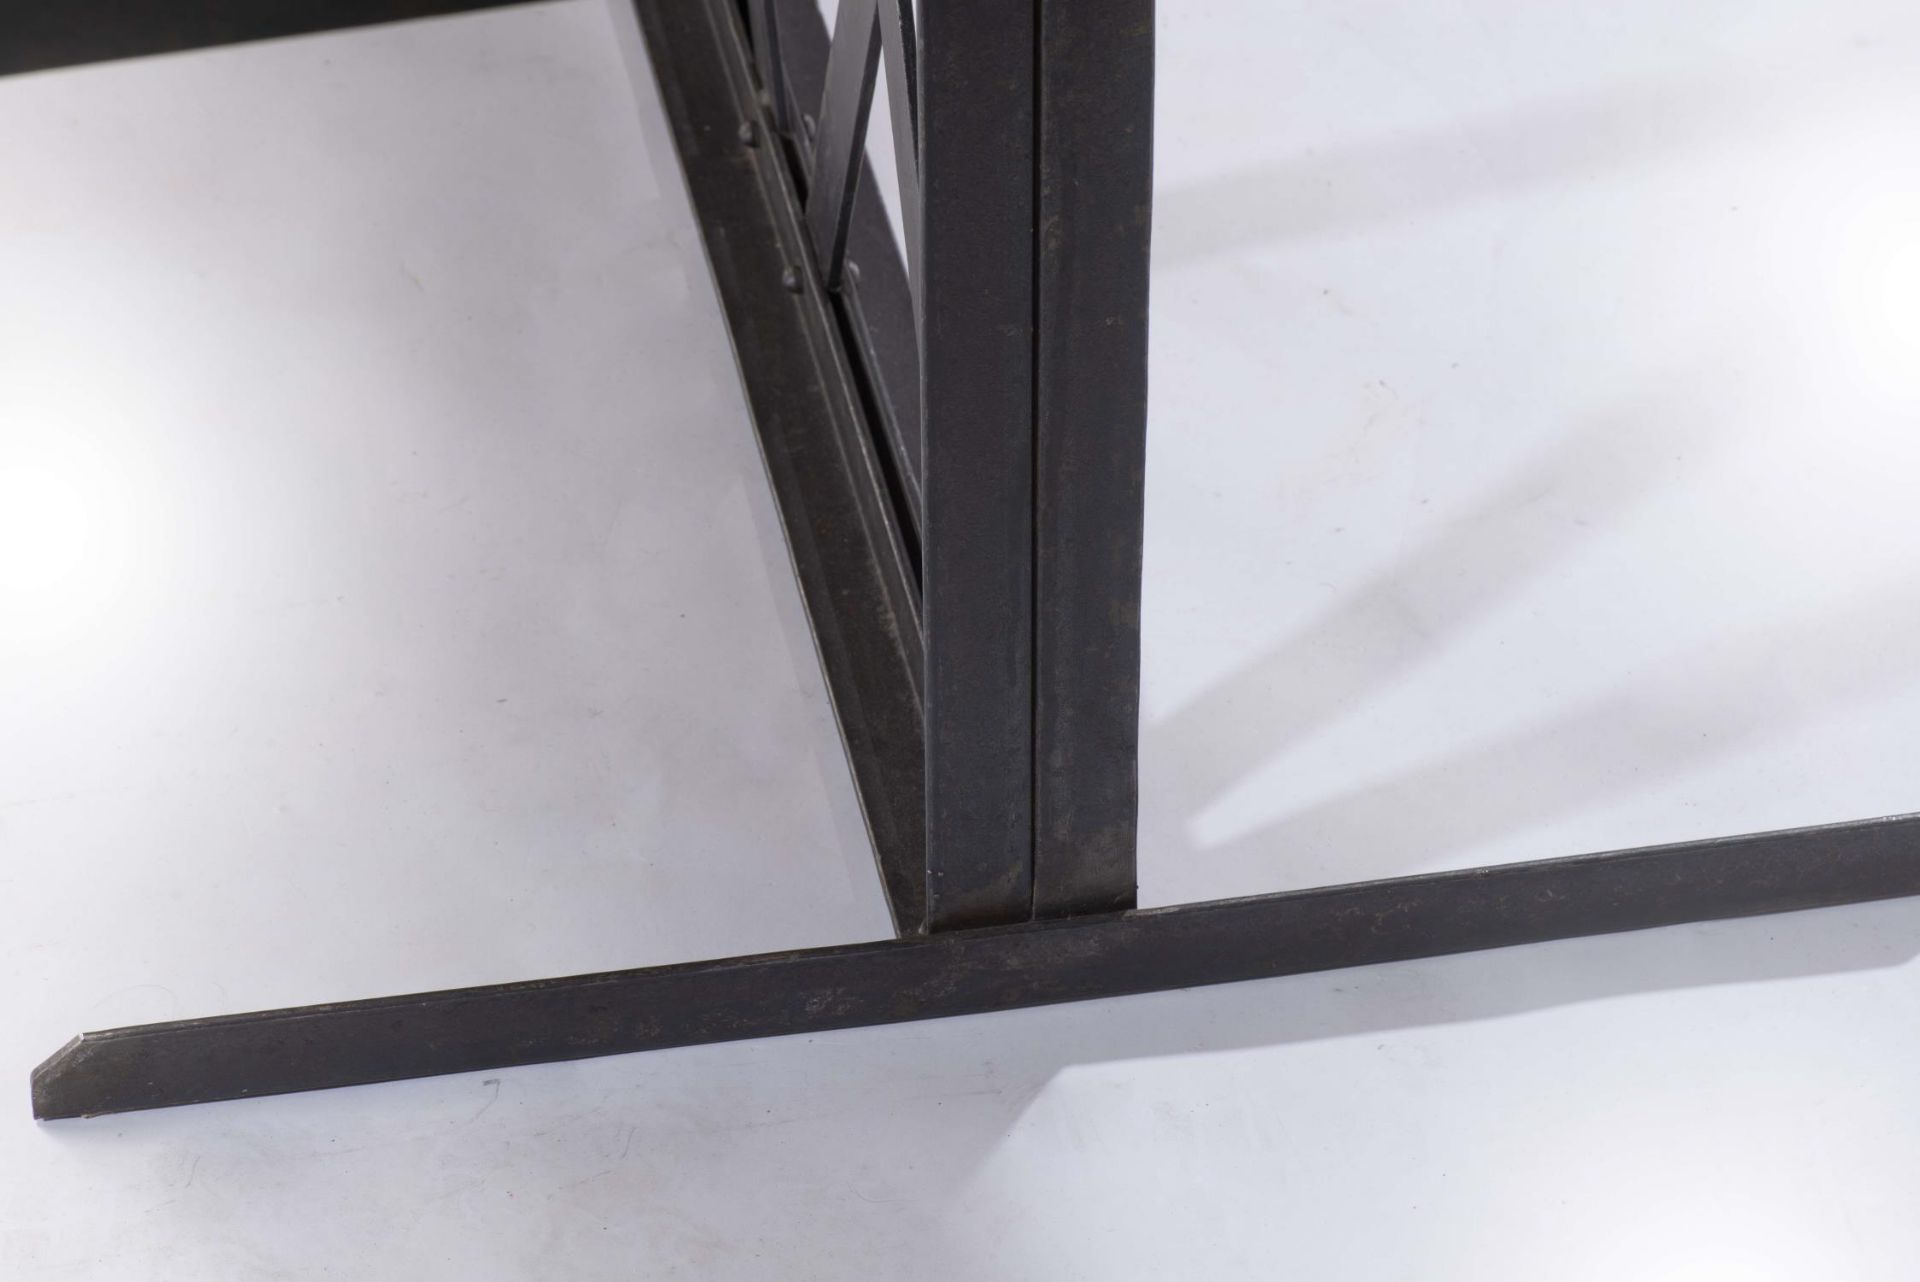 Table de style industriel - Table de style industriel, piètement en métal noir, [...] - Bild 5 aus 6